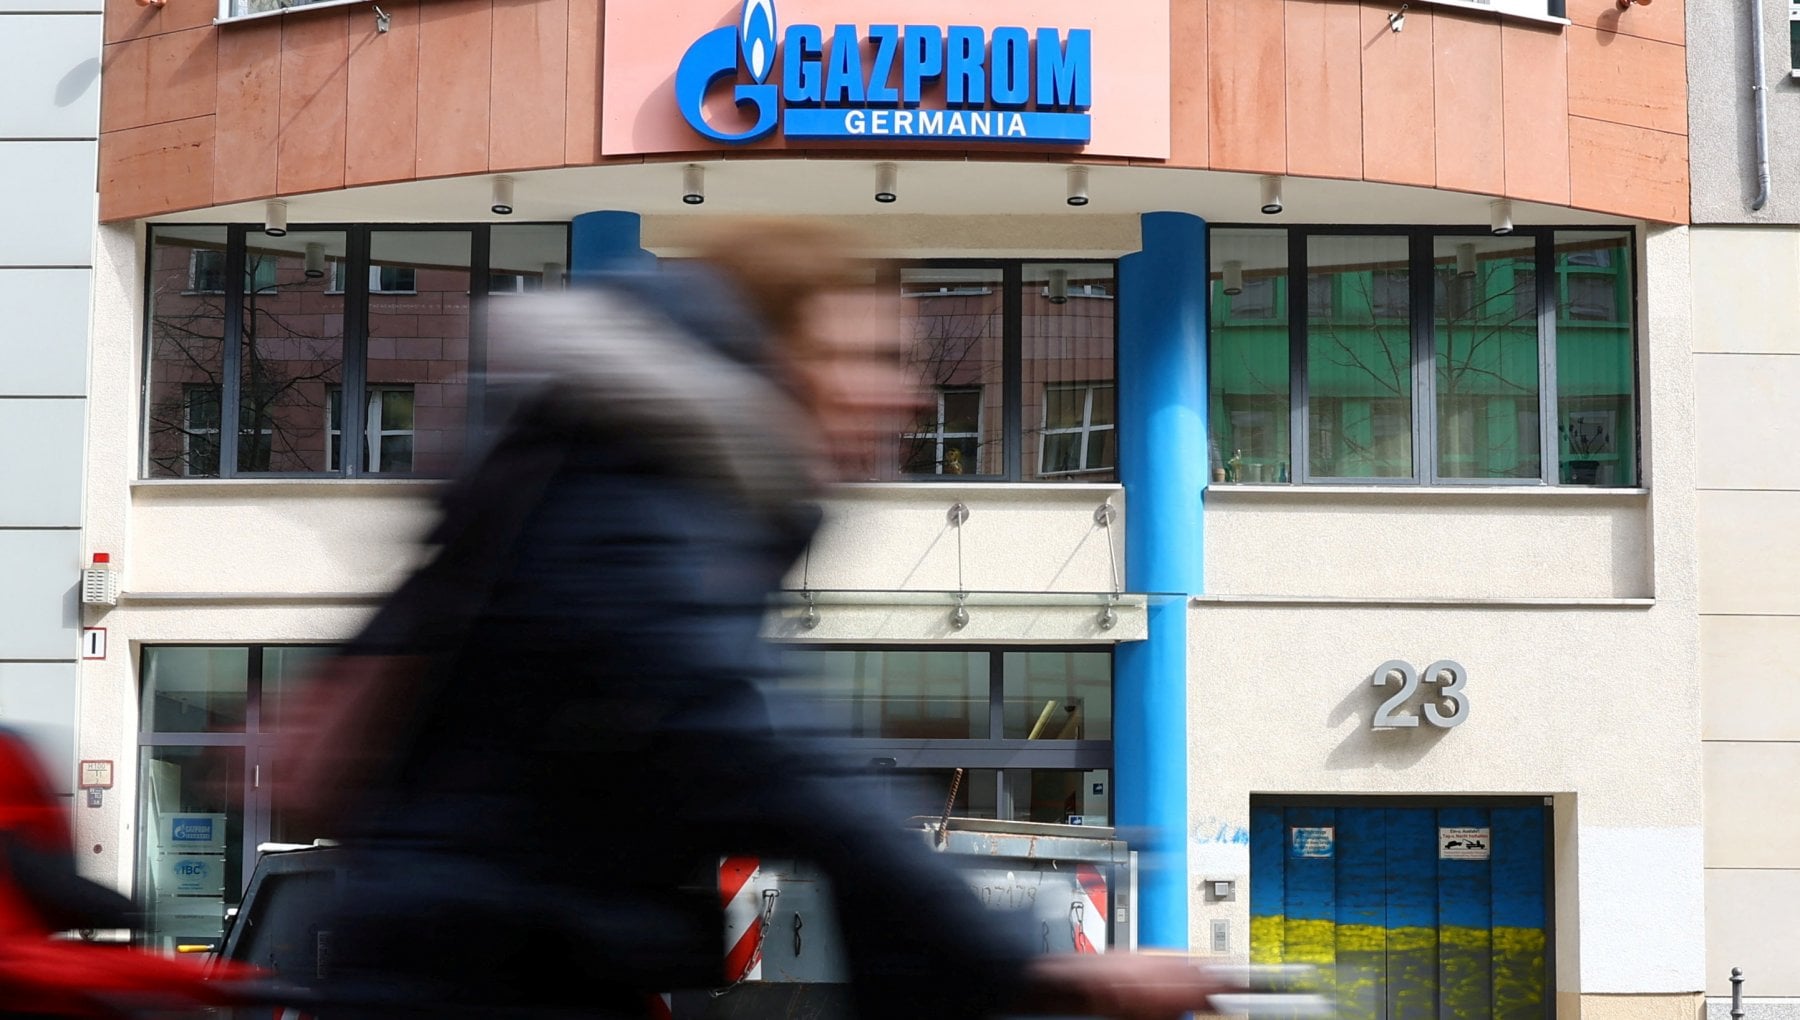 Germania, il governo pensa a nazionalizzare anche la filiale tedesca di Gazprom